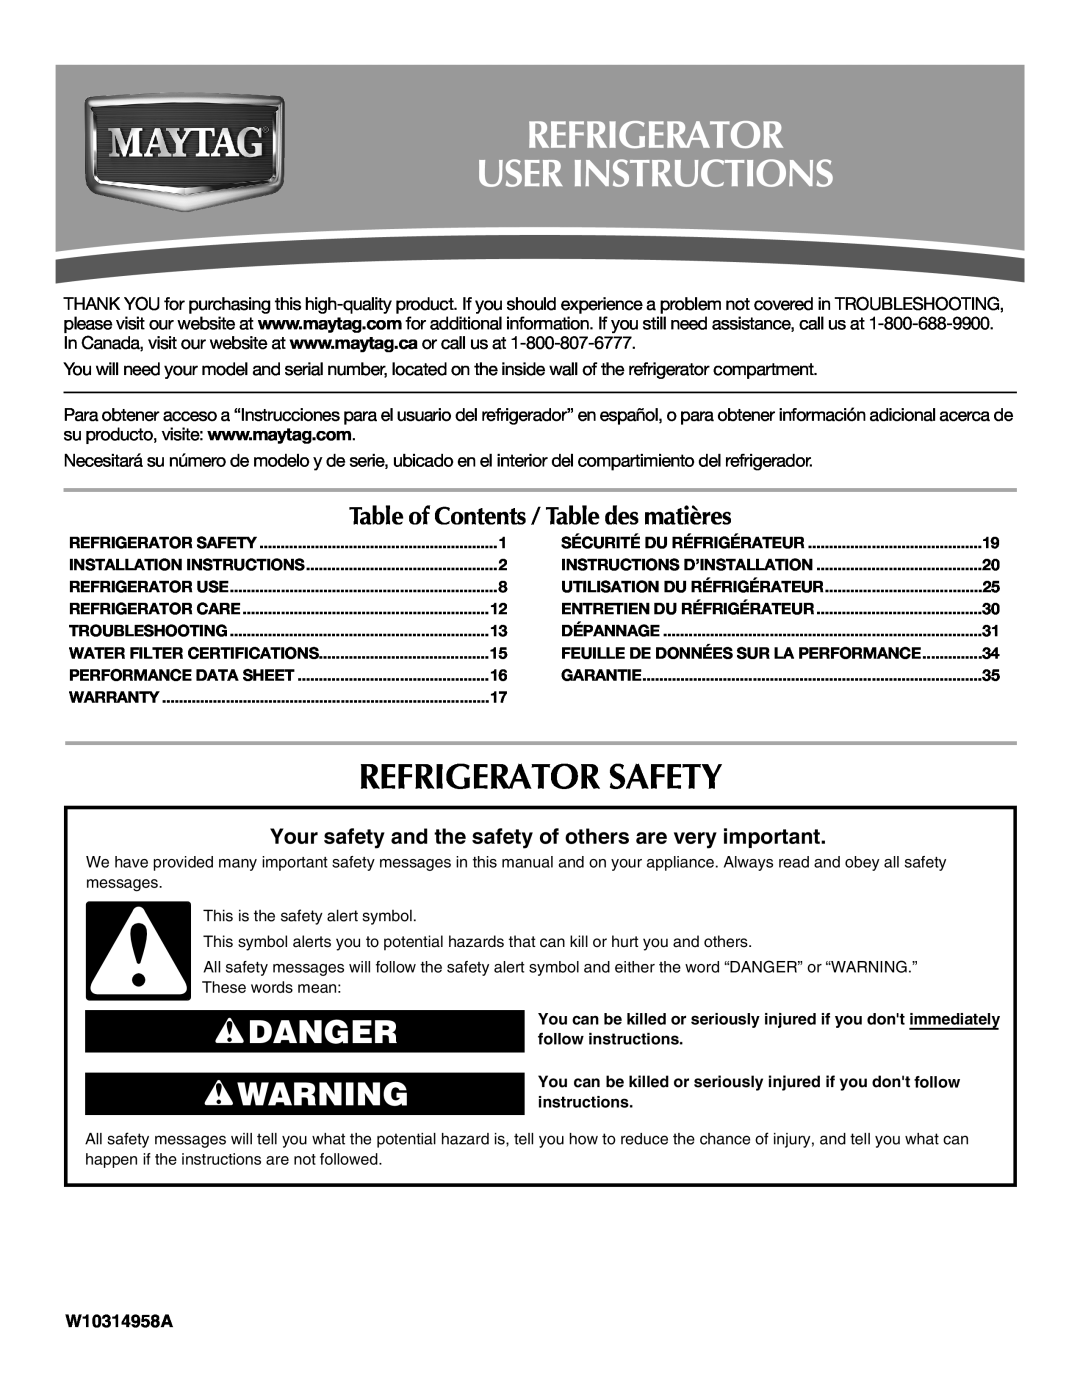 Maytag UKF8001AXX-200 installation instructions Refrigerator User Instructions, Refrigerator Safety, Danger, W10314958A 